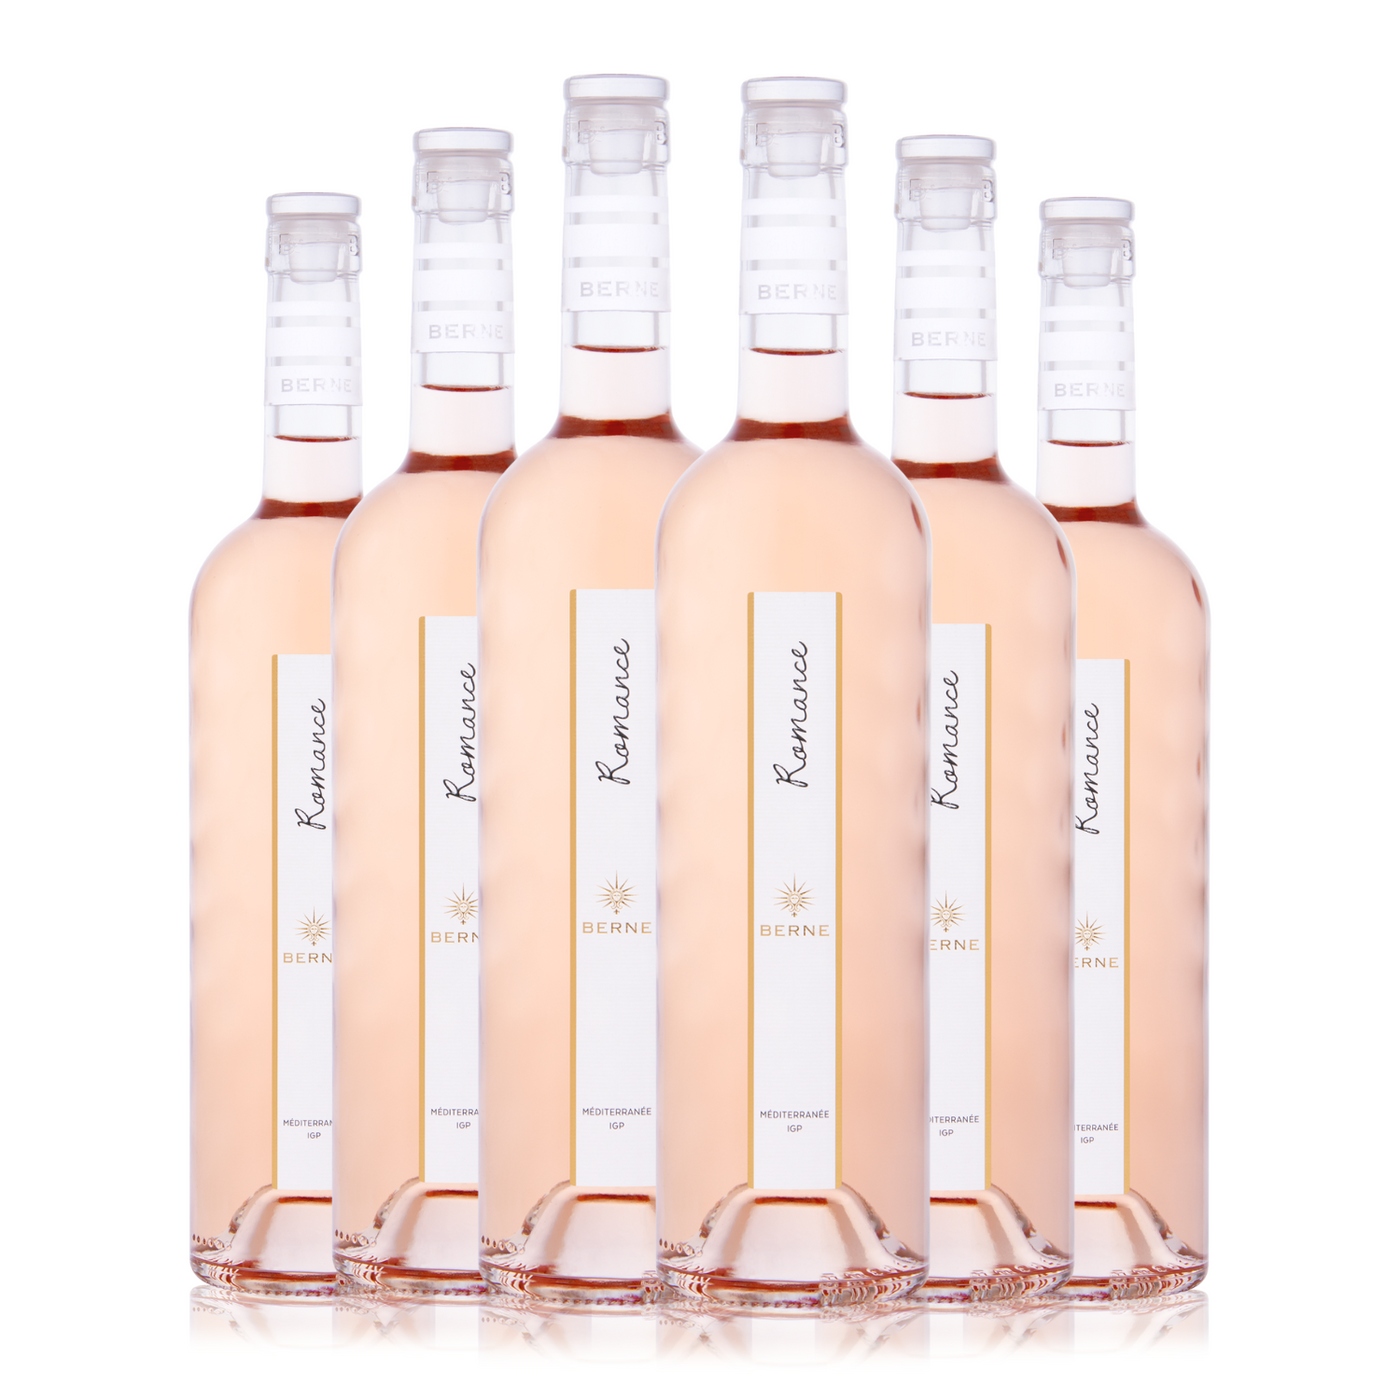 Rosé Wine 2023 IGP Méditerranée - Romance